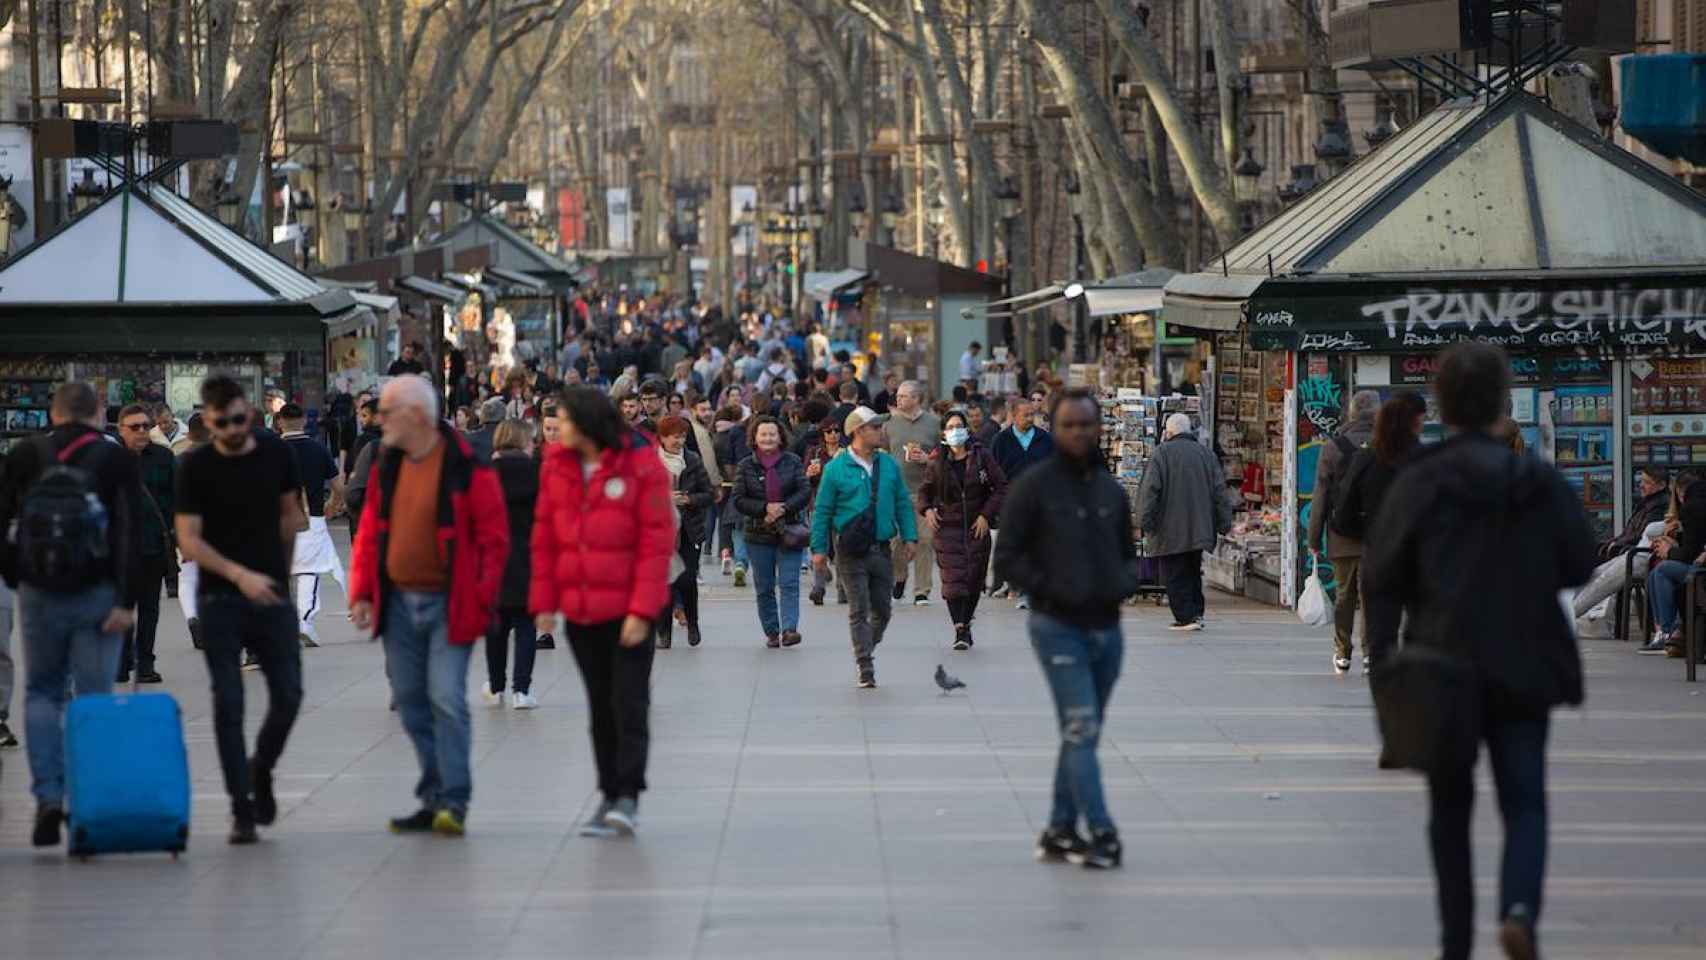 Personas pasean por la ciudad de Barcelona antes de la pandemia de Covid / EP